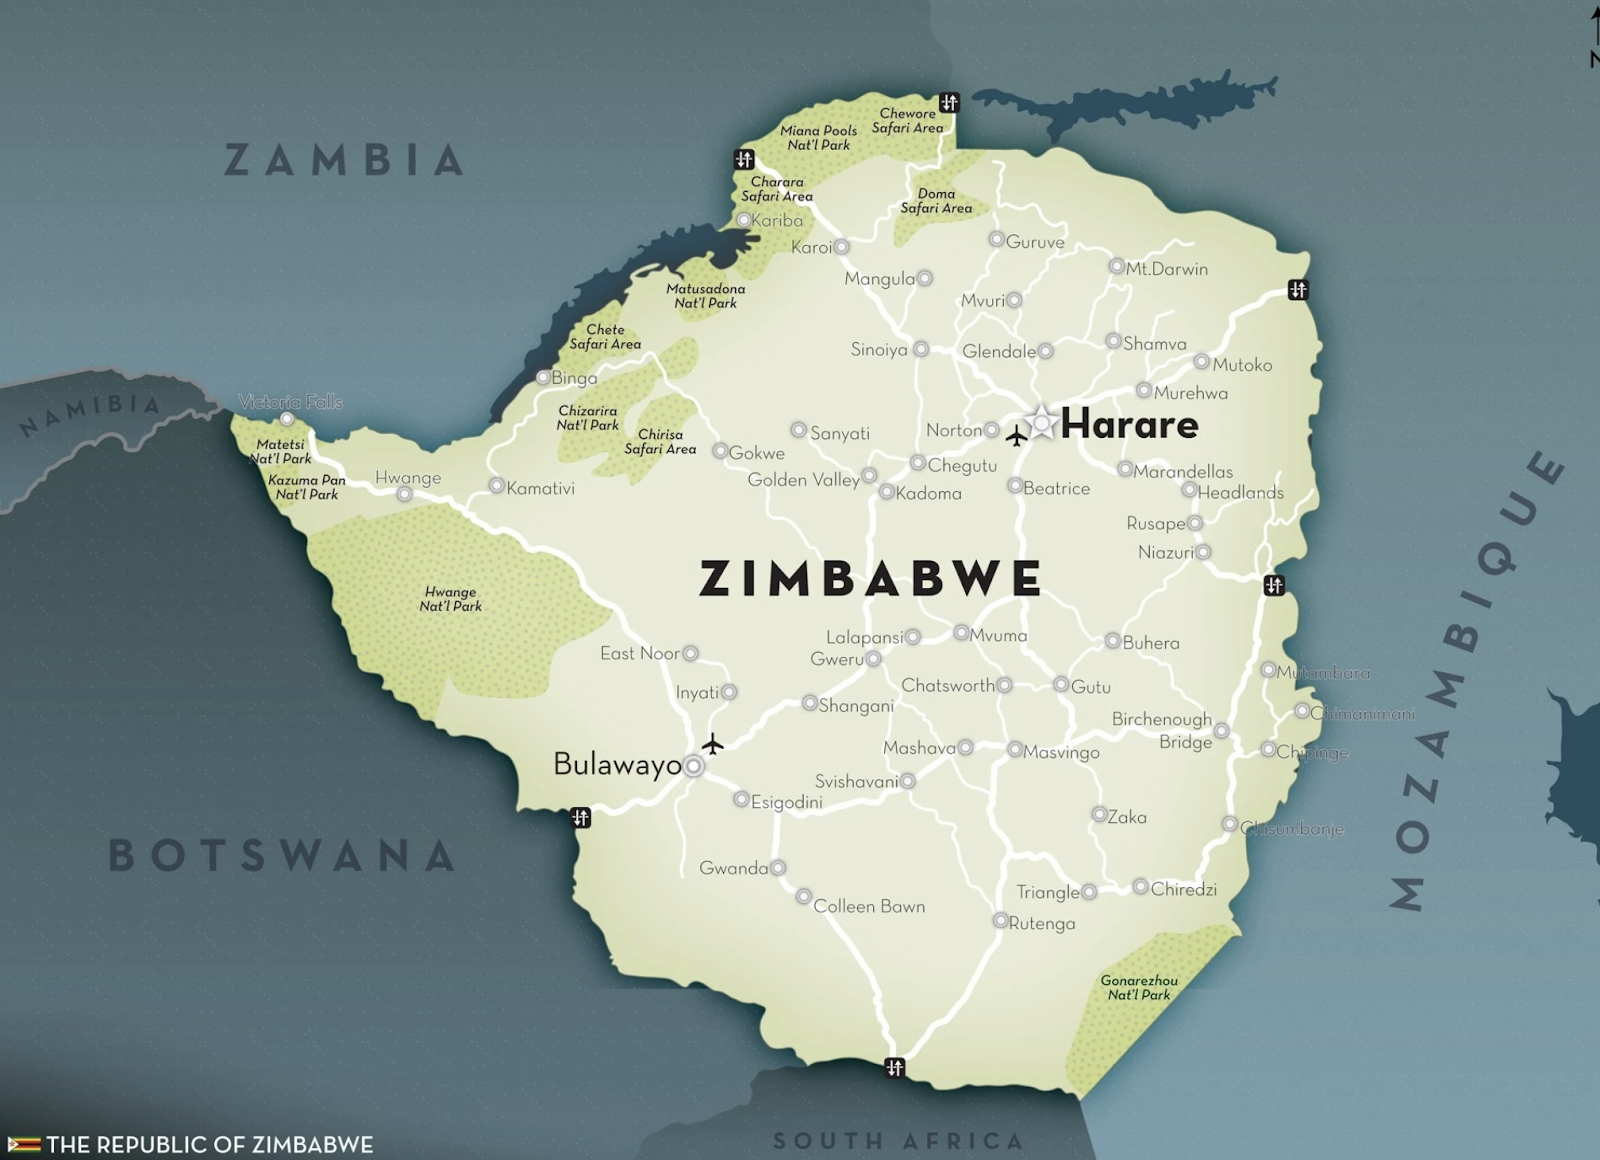 Where is Zimbabwe?